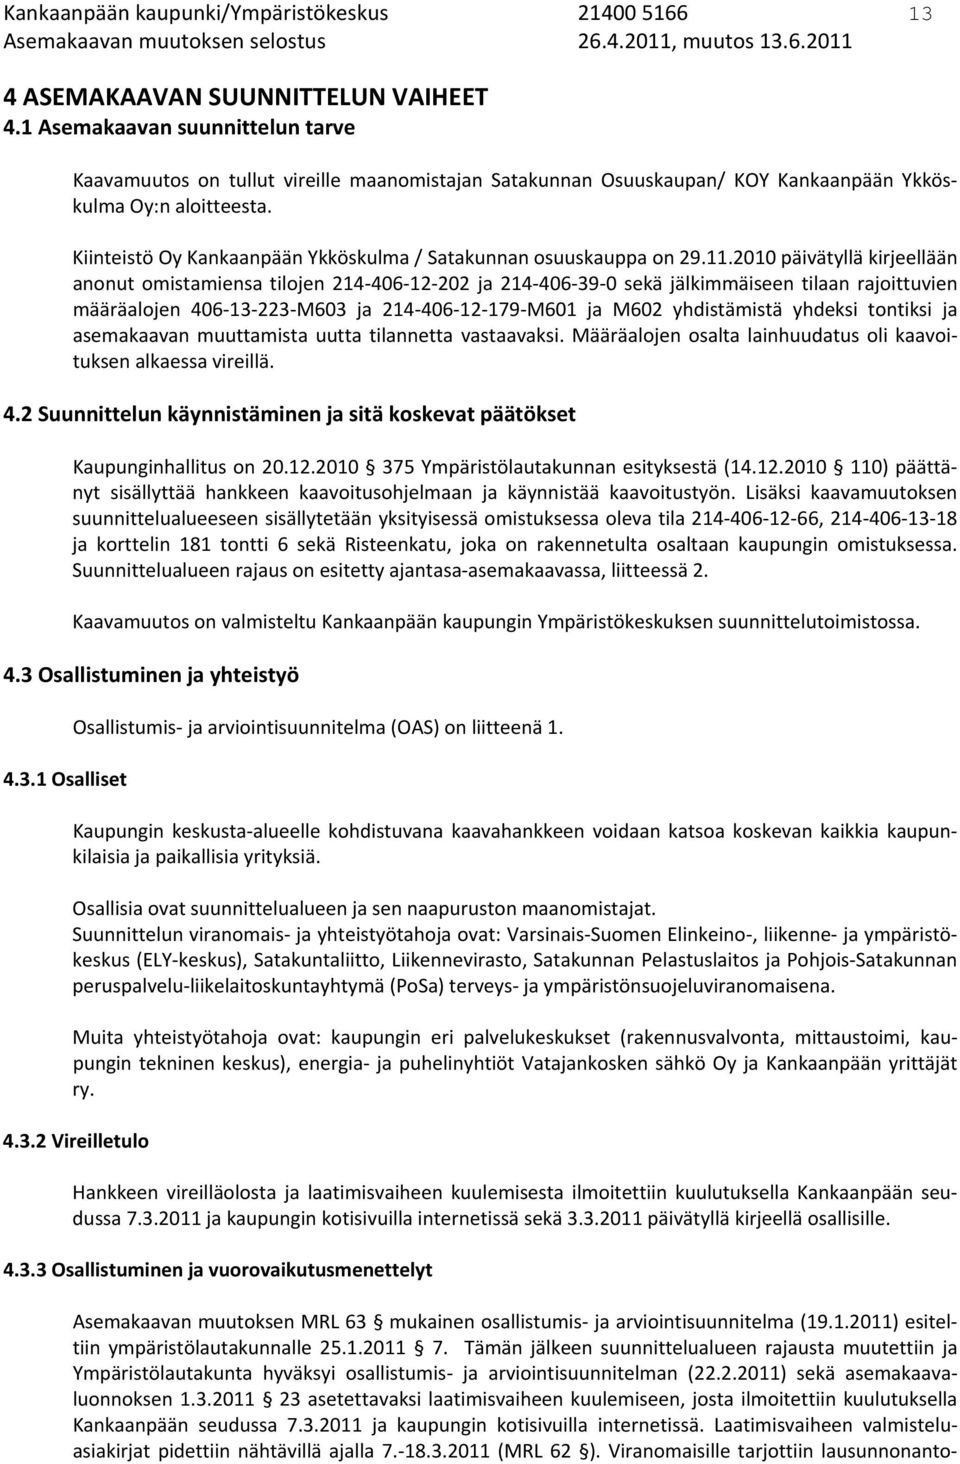 Kiinteistö Oy Kankaanpään Ykköskulma / Satakunnan osuuskauppa on 29.11.